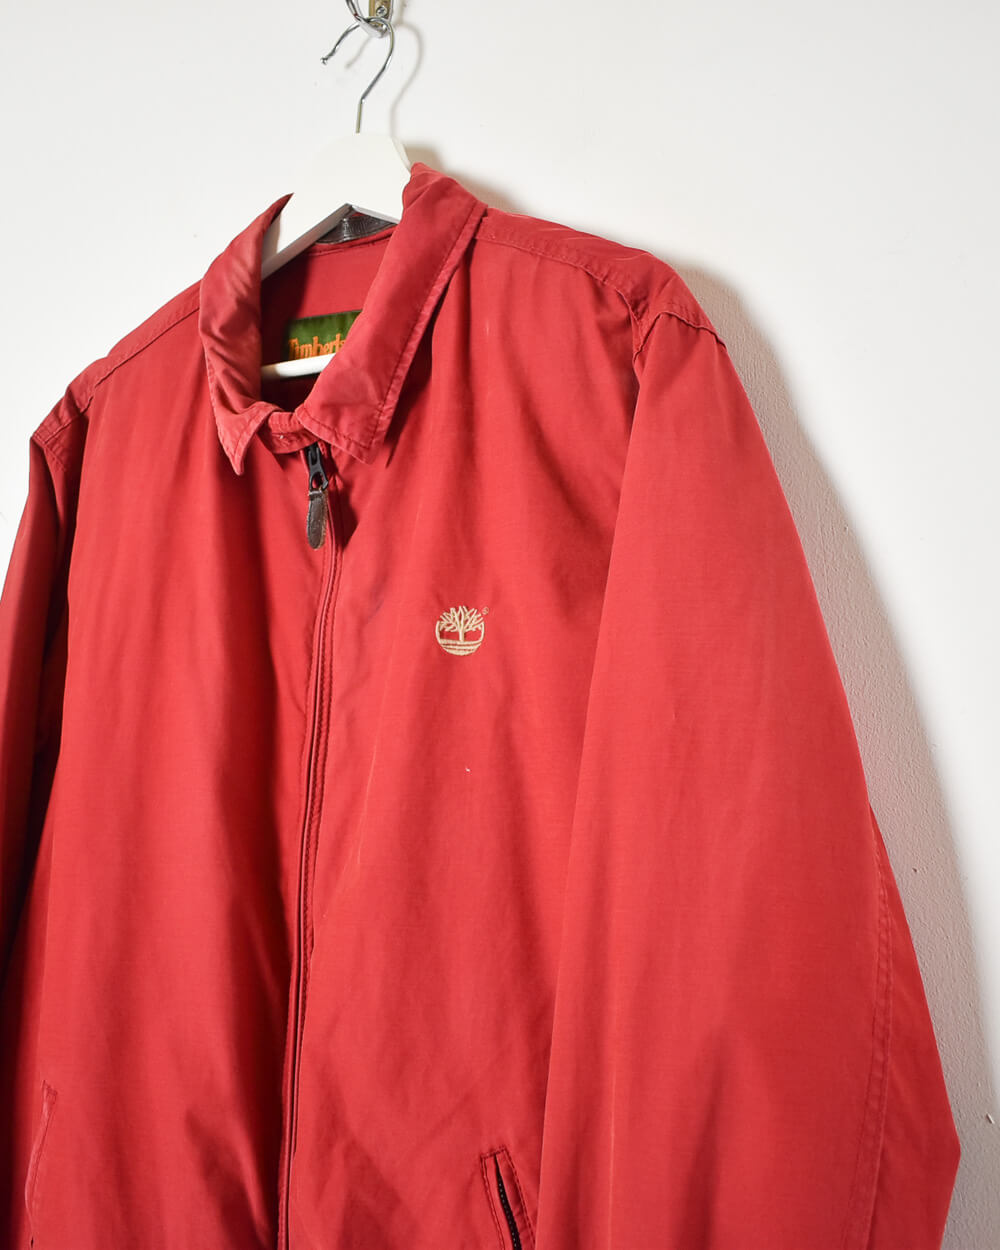 Red Timberland Harrington Jacket - Large